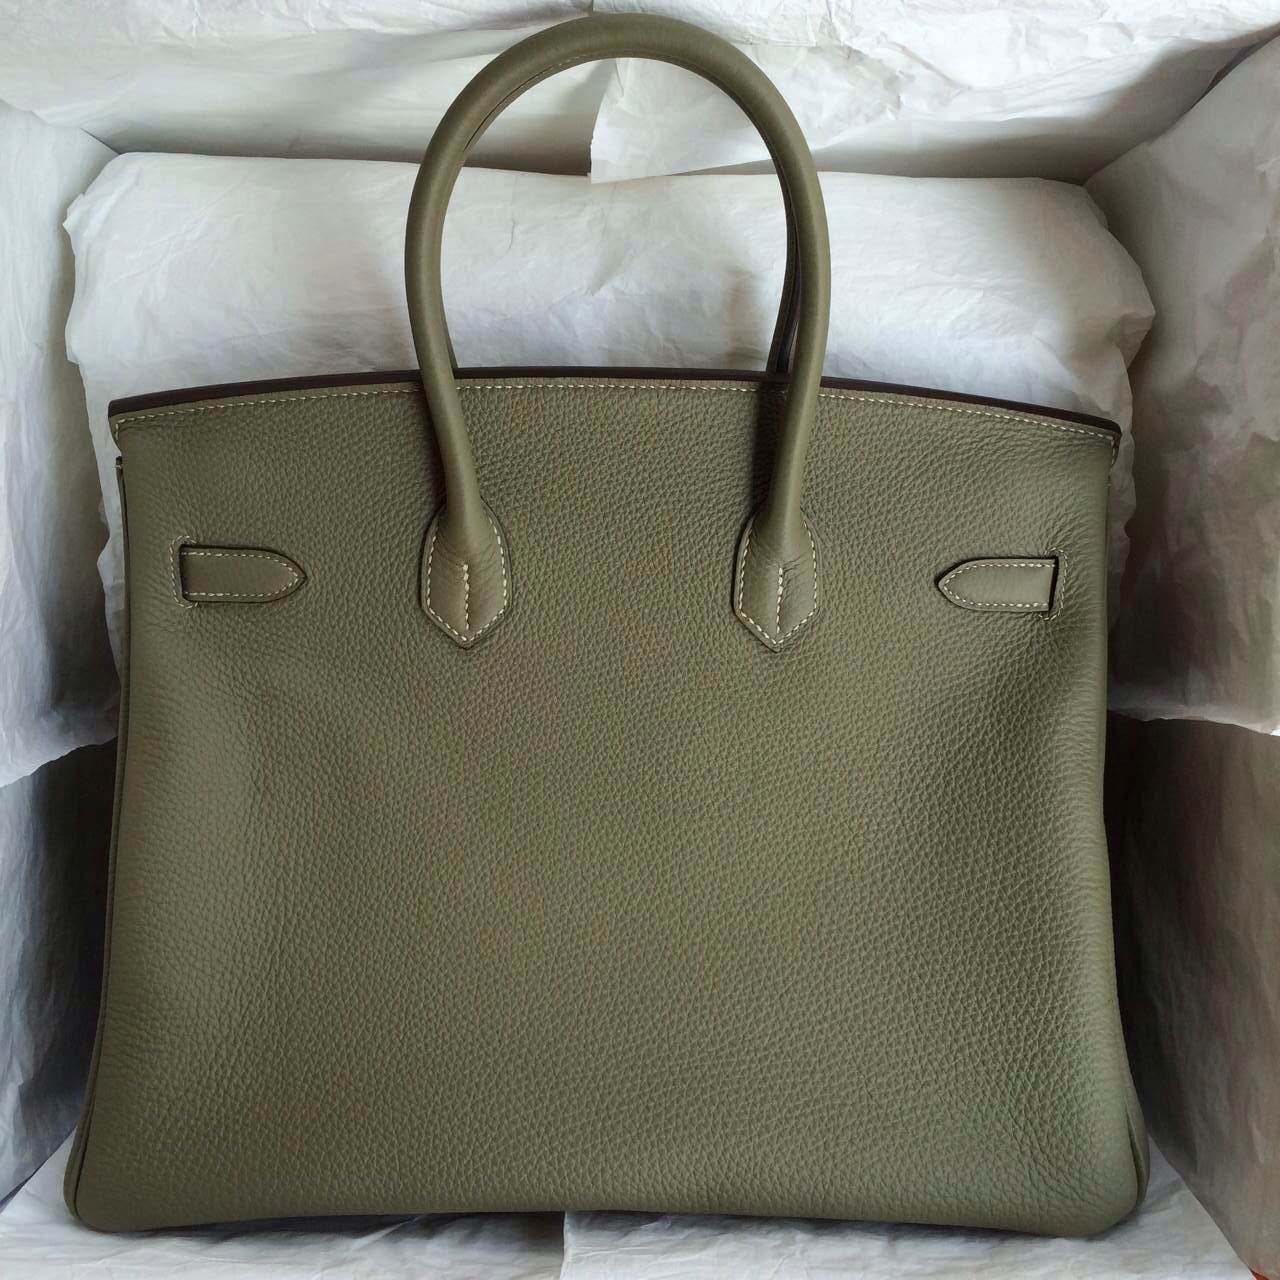 Hand Stitching Hermes Birkin Bags 35cm France Togo Leather CK64 Celadon Color